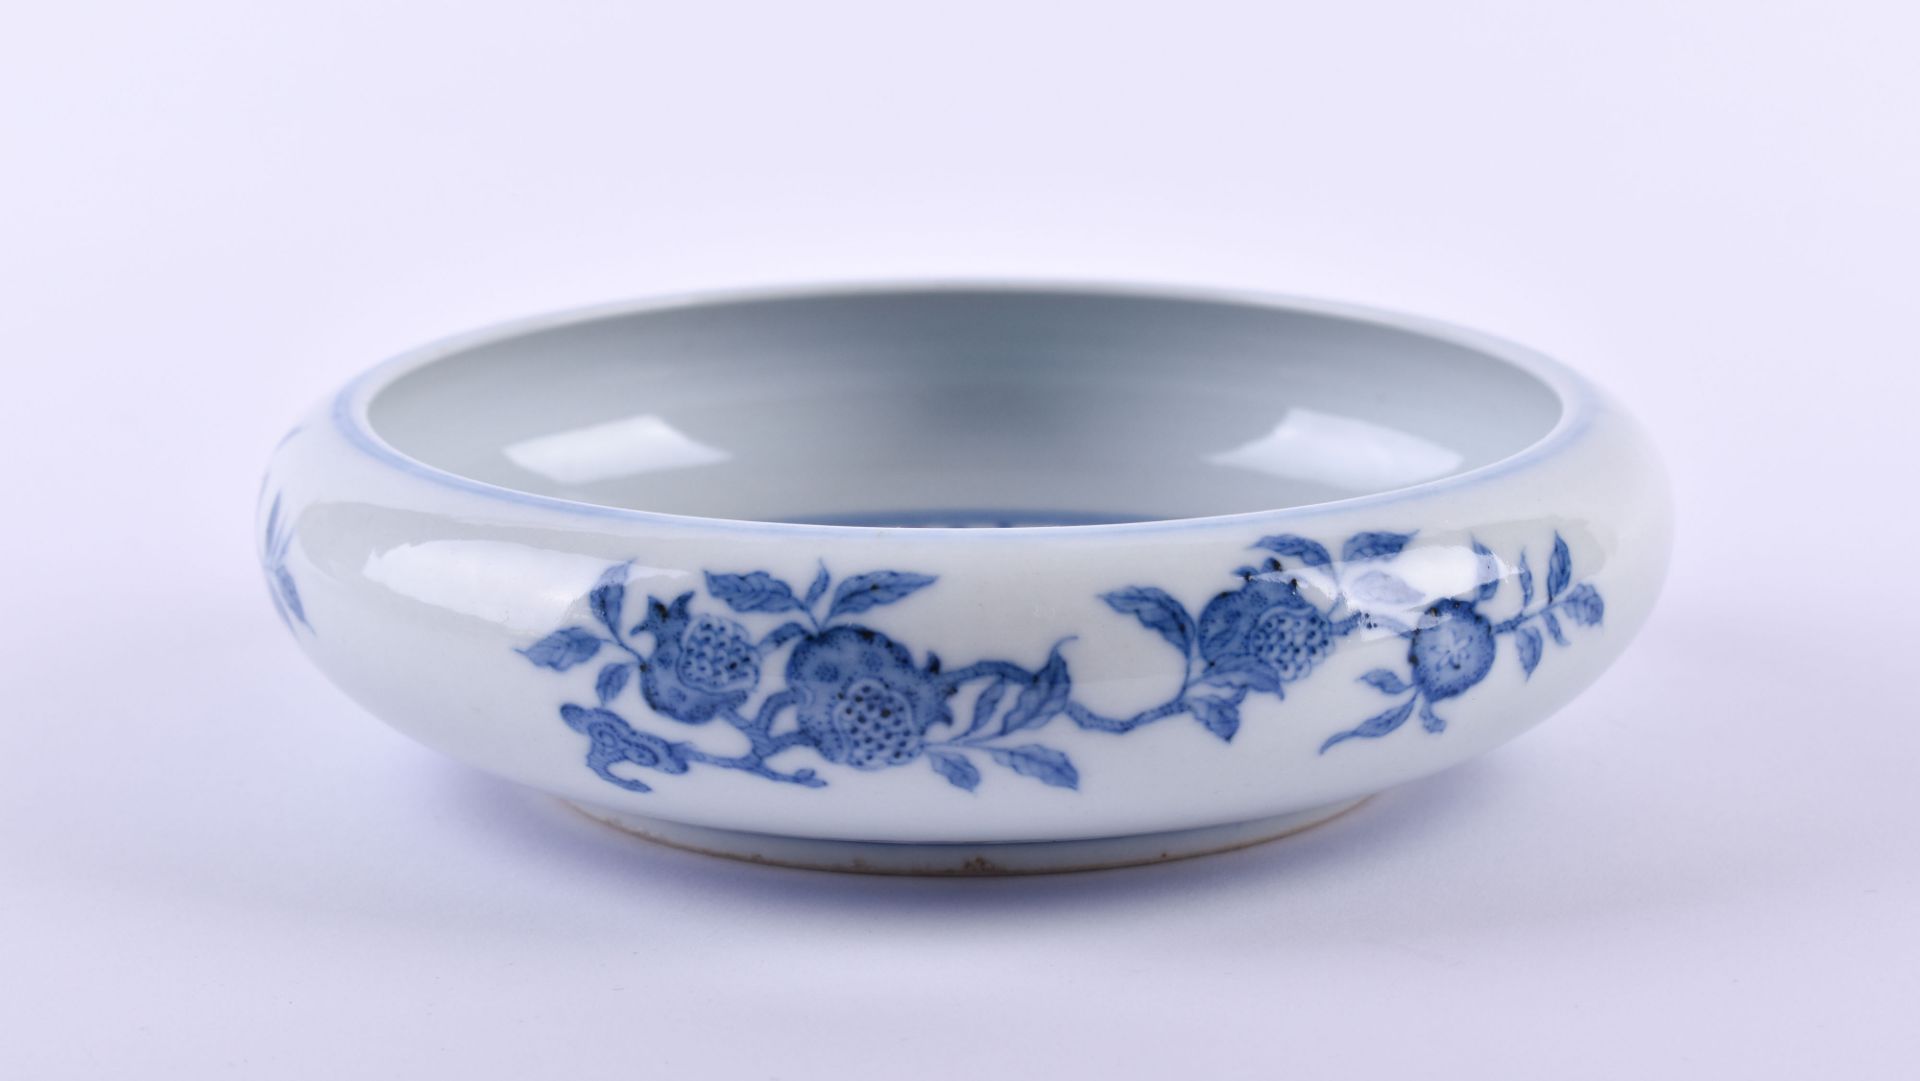  Bowl China Qing dynasty - Image 3 of 10